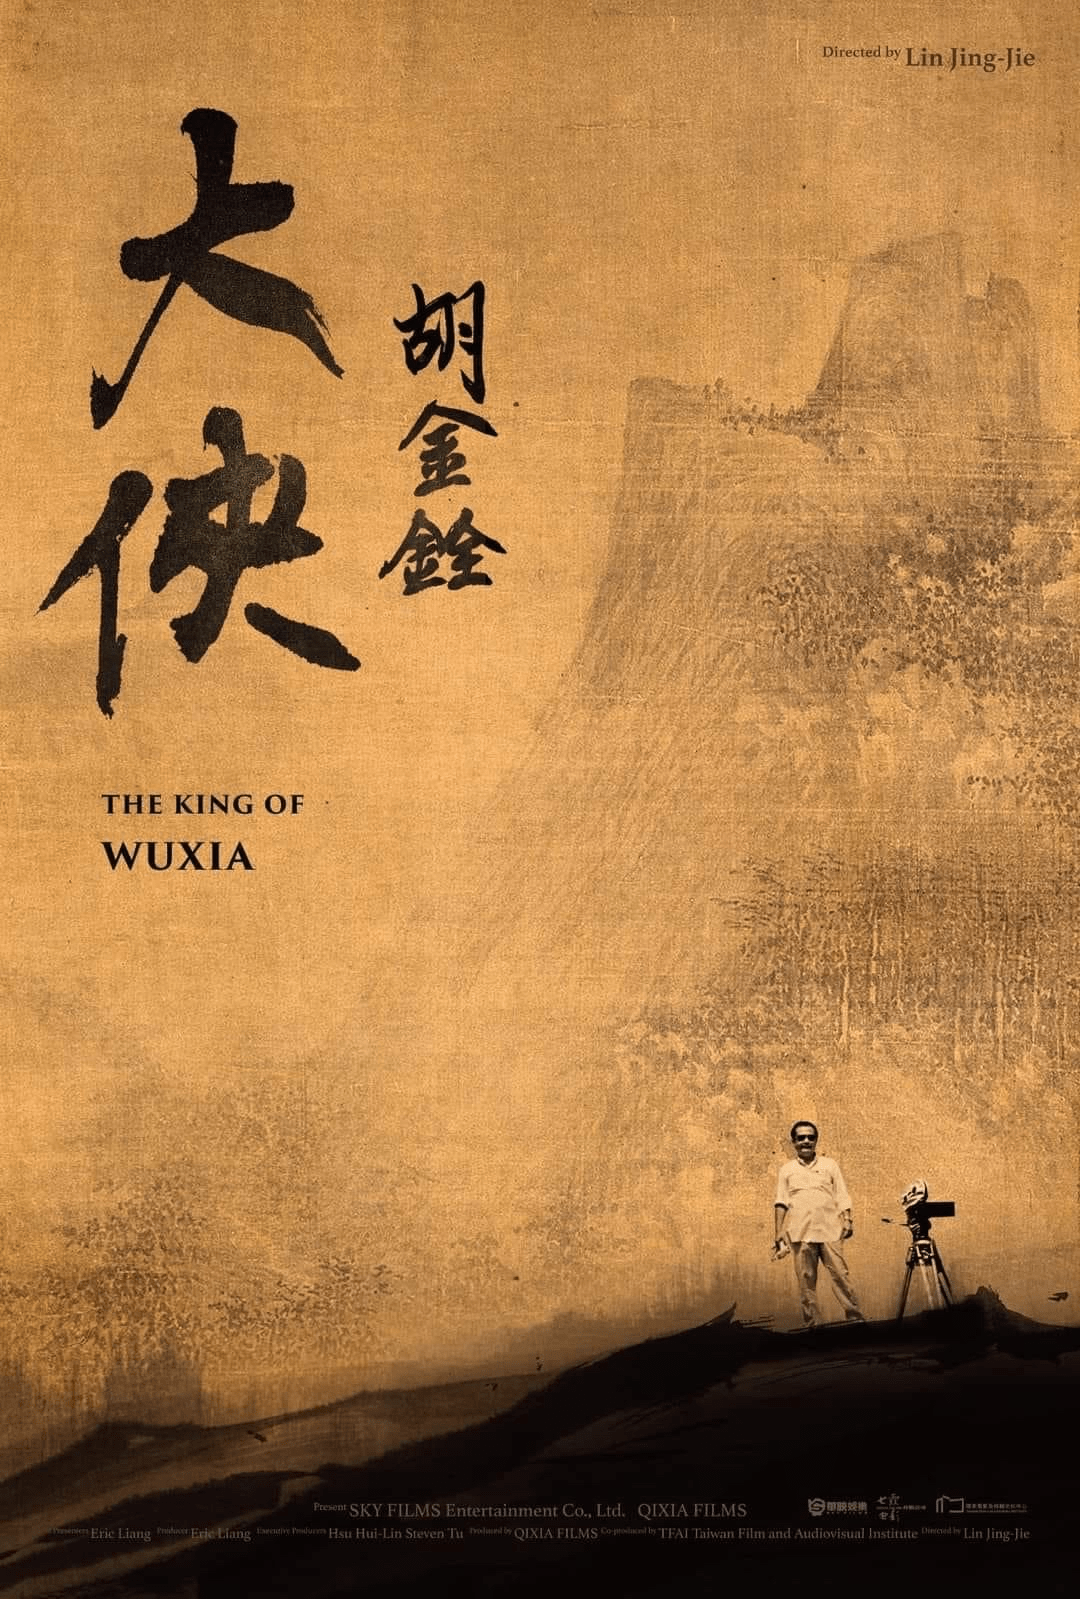 纪录片《大侠胡金铨》发布国际版海报